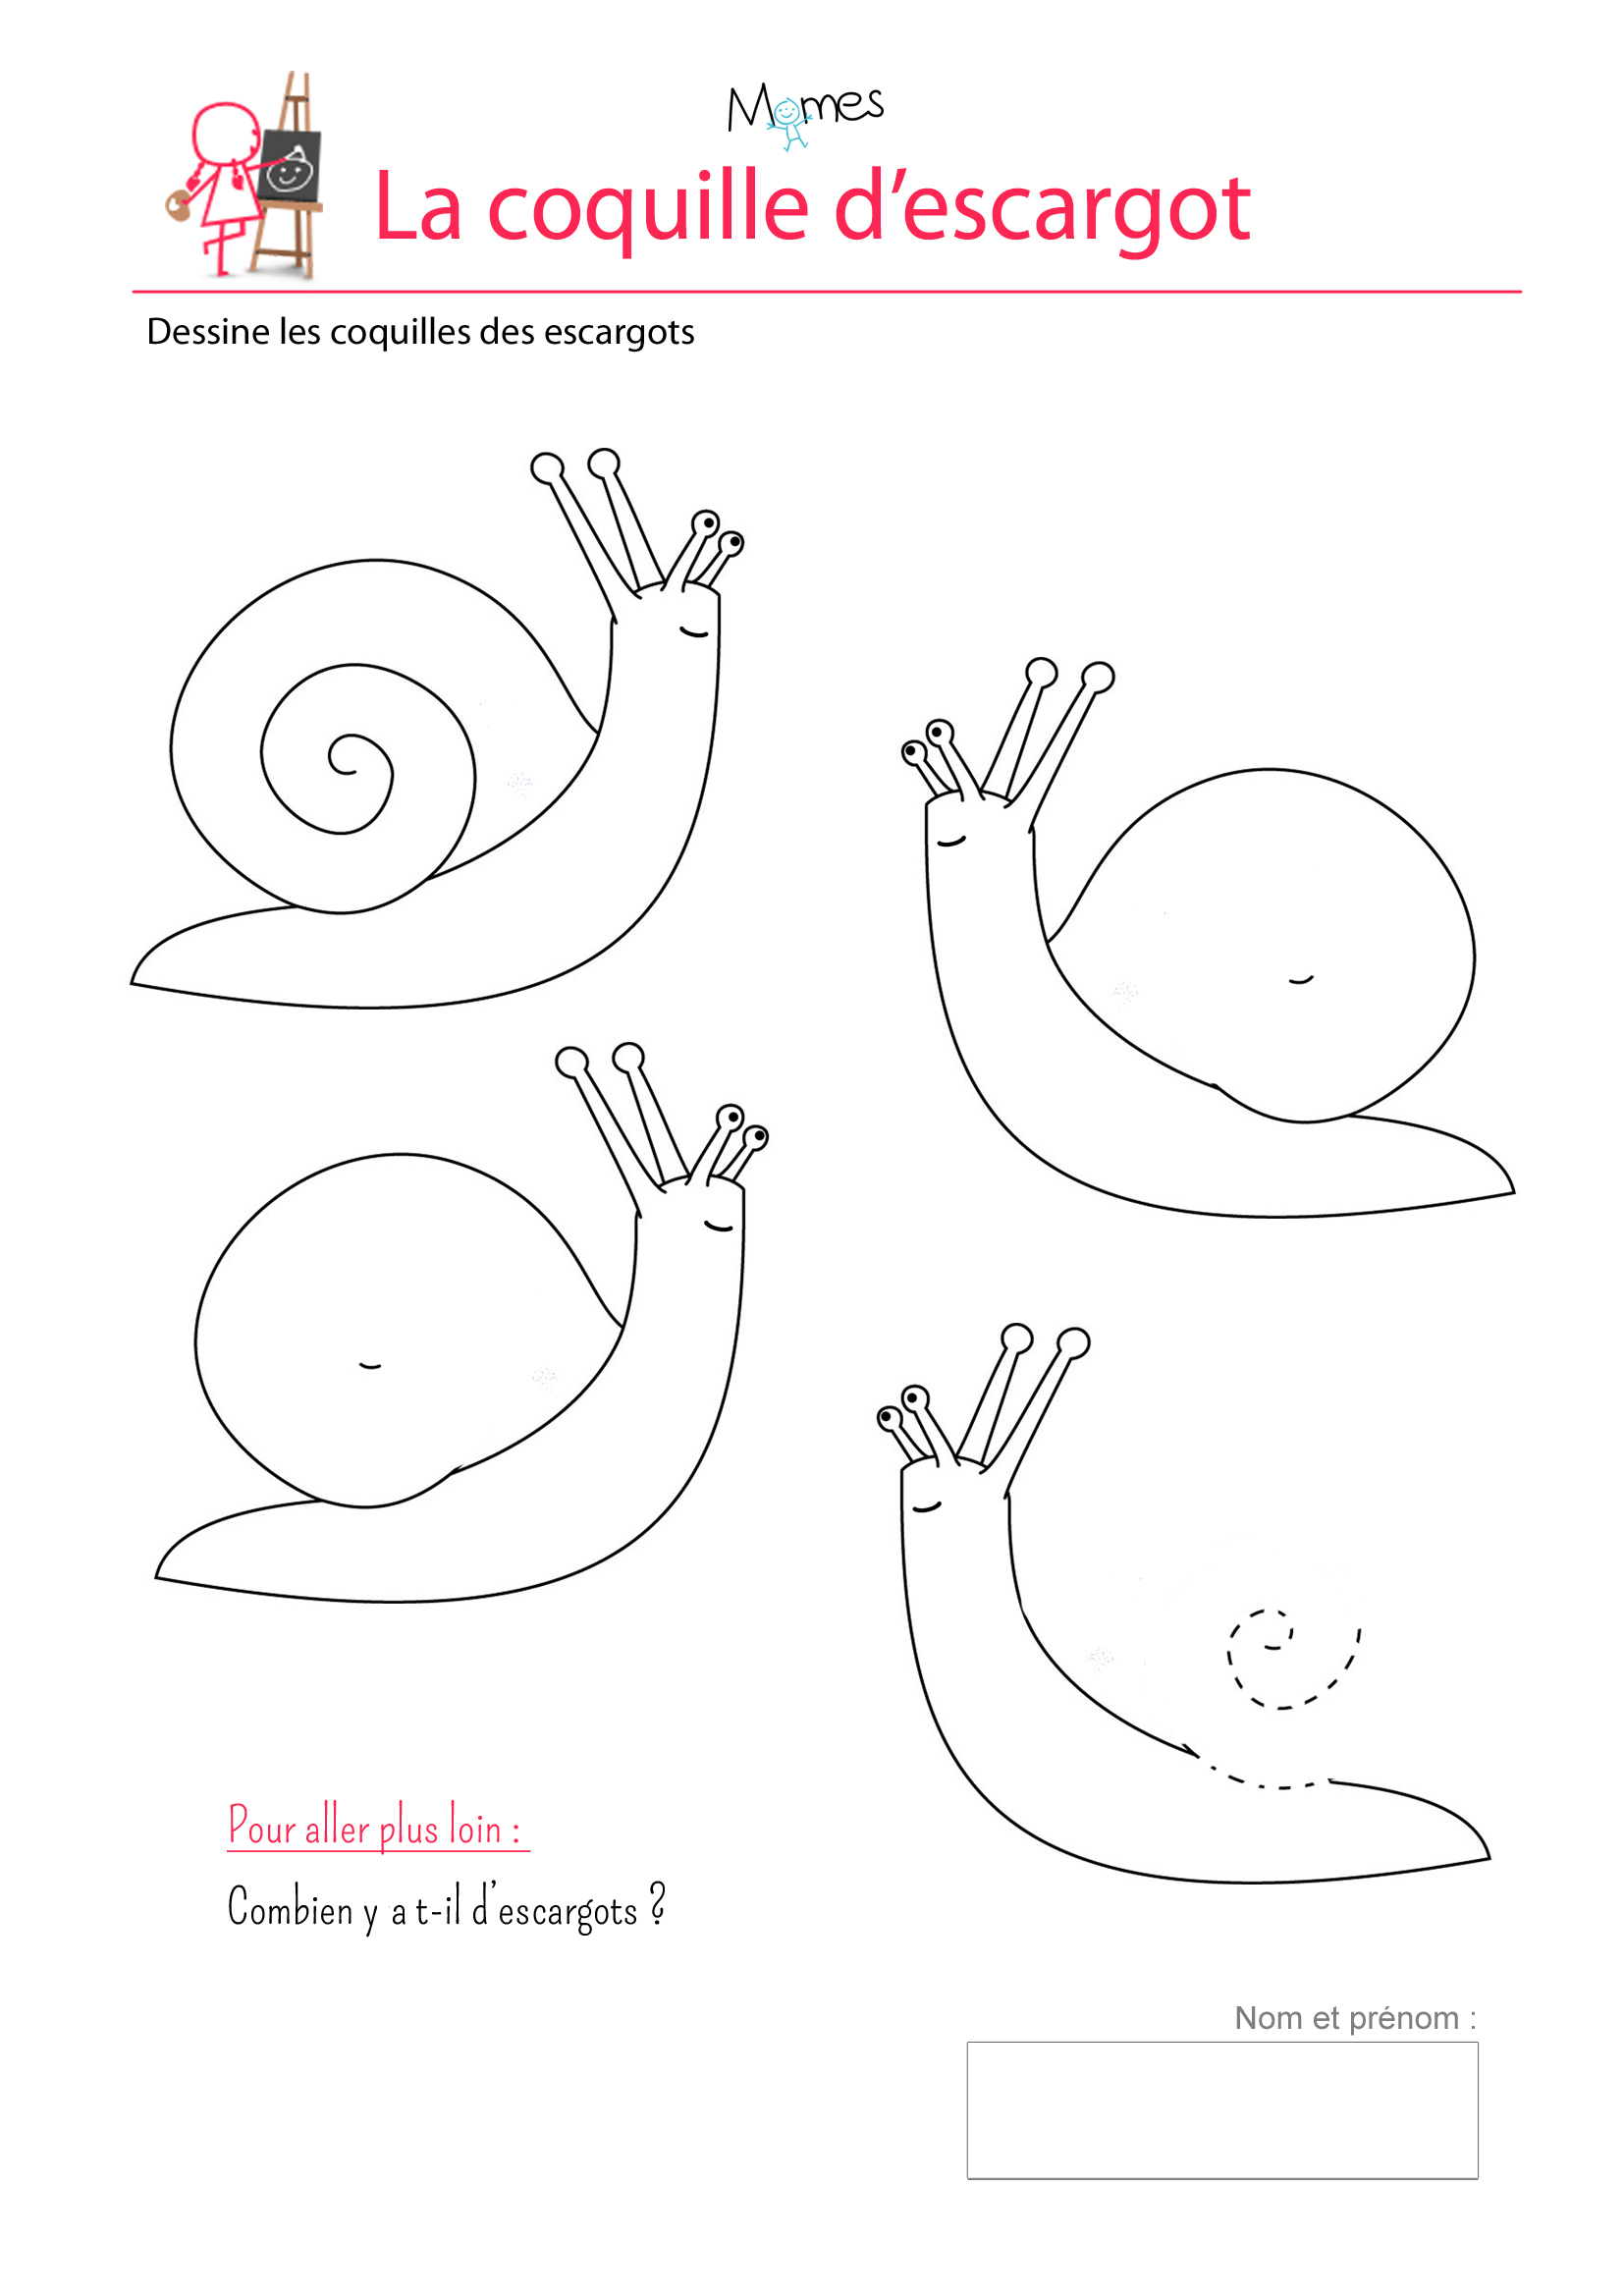 Les Coquilles D'escargots - Exercice Sur Les Spirales tout Exercice 4 Ans